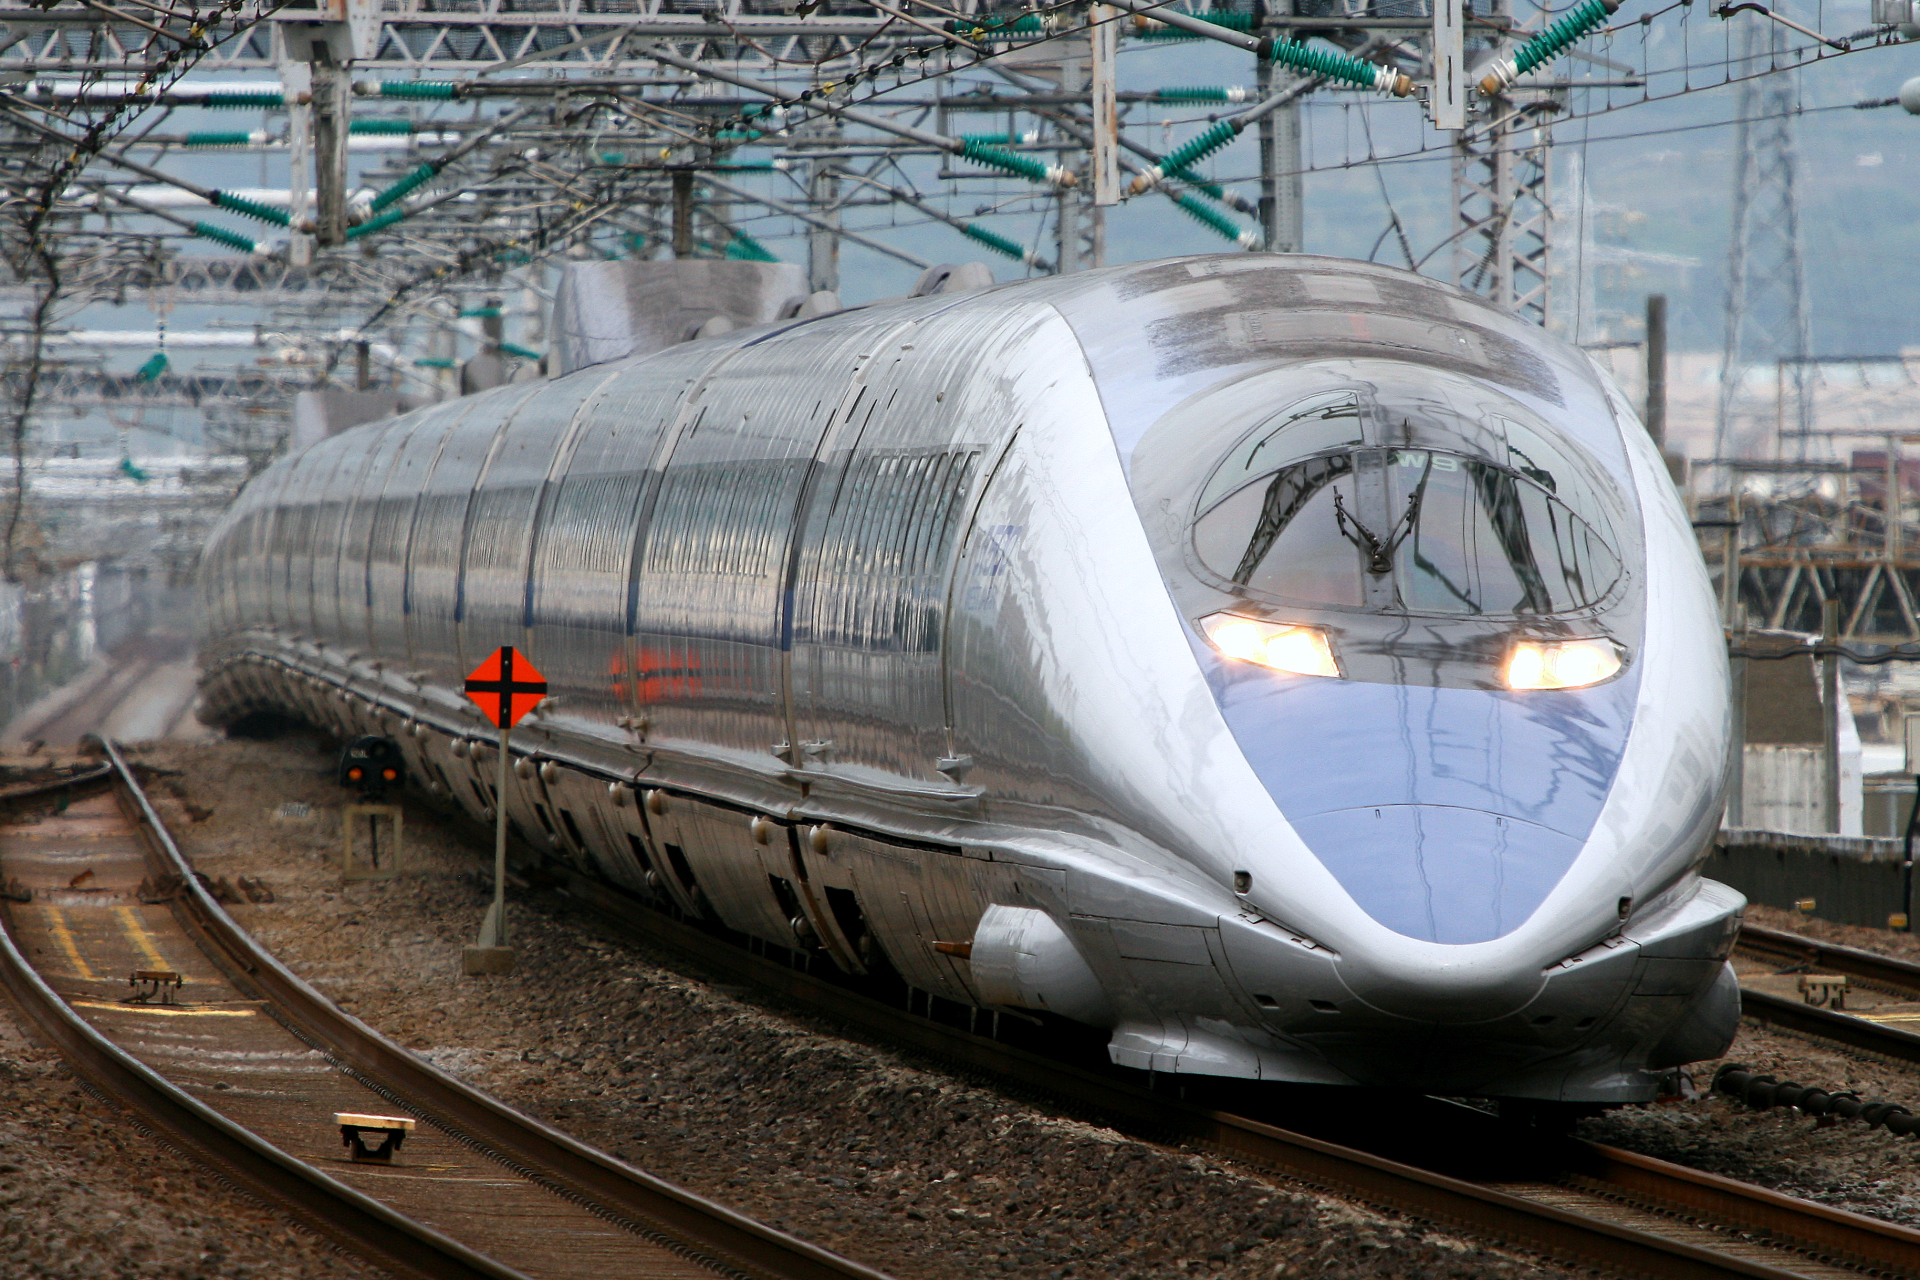 500系新幹線の思い出 Odapedia 小田急を中心とした鉄道に関するブログメディア